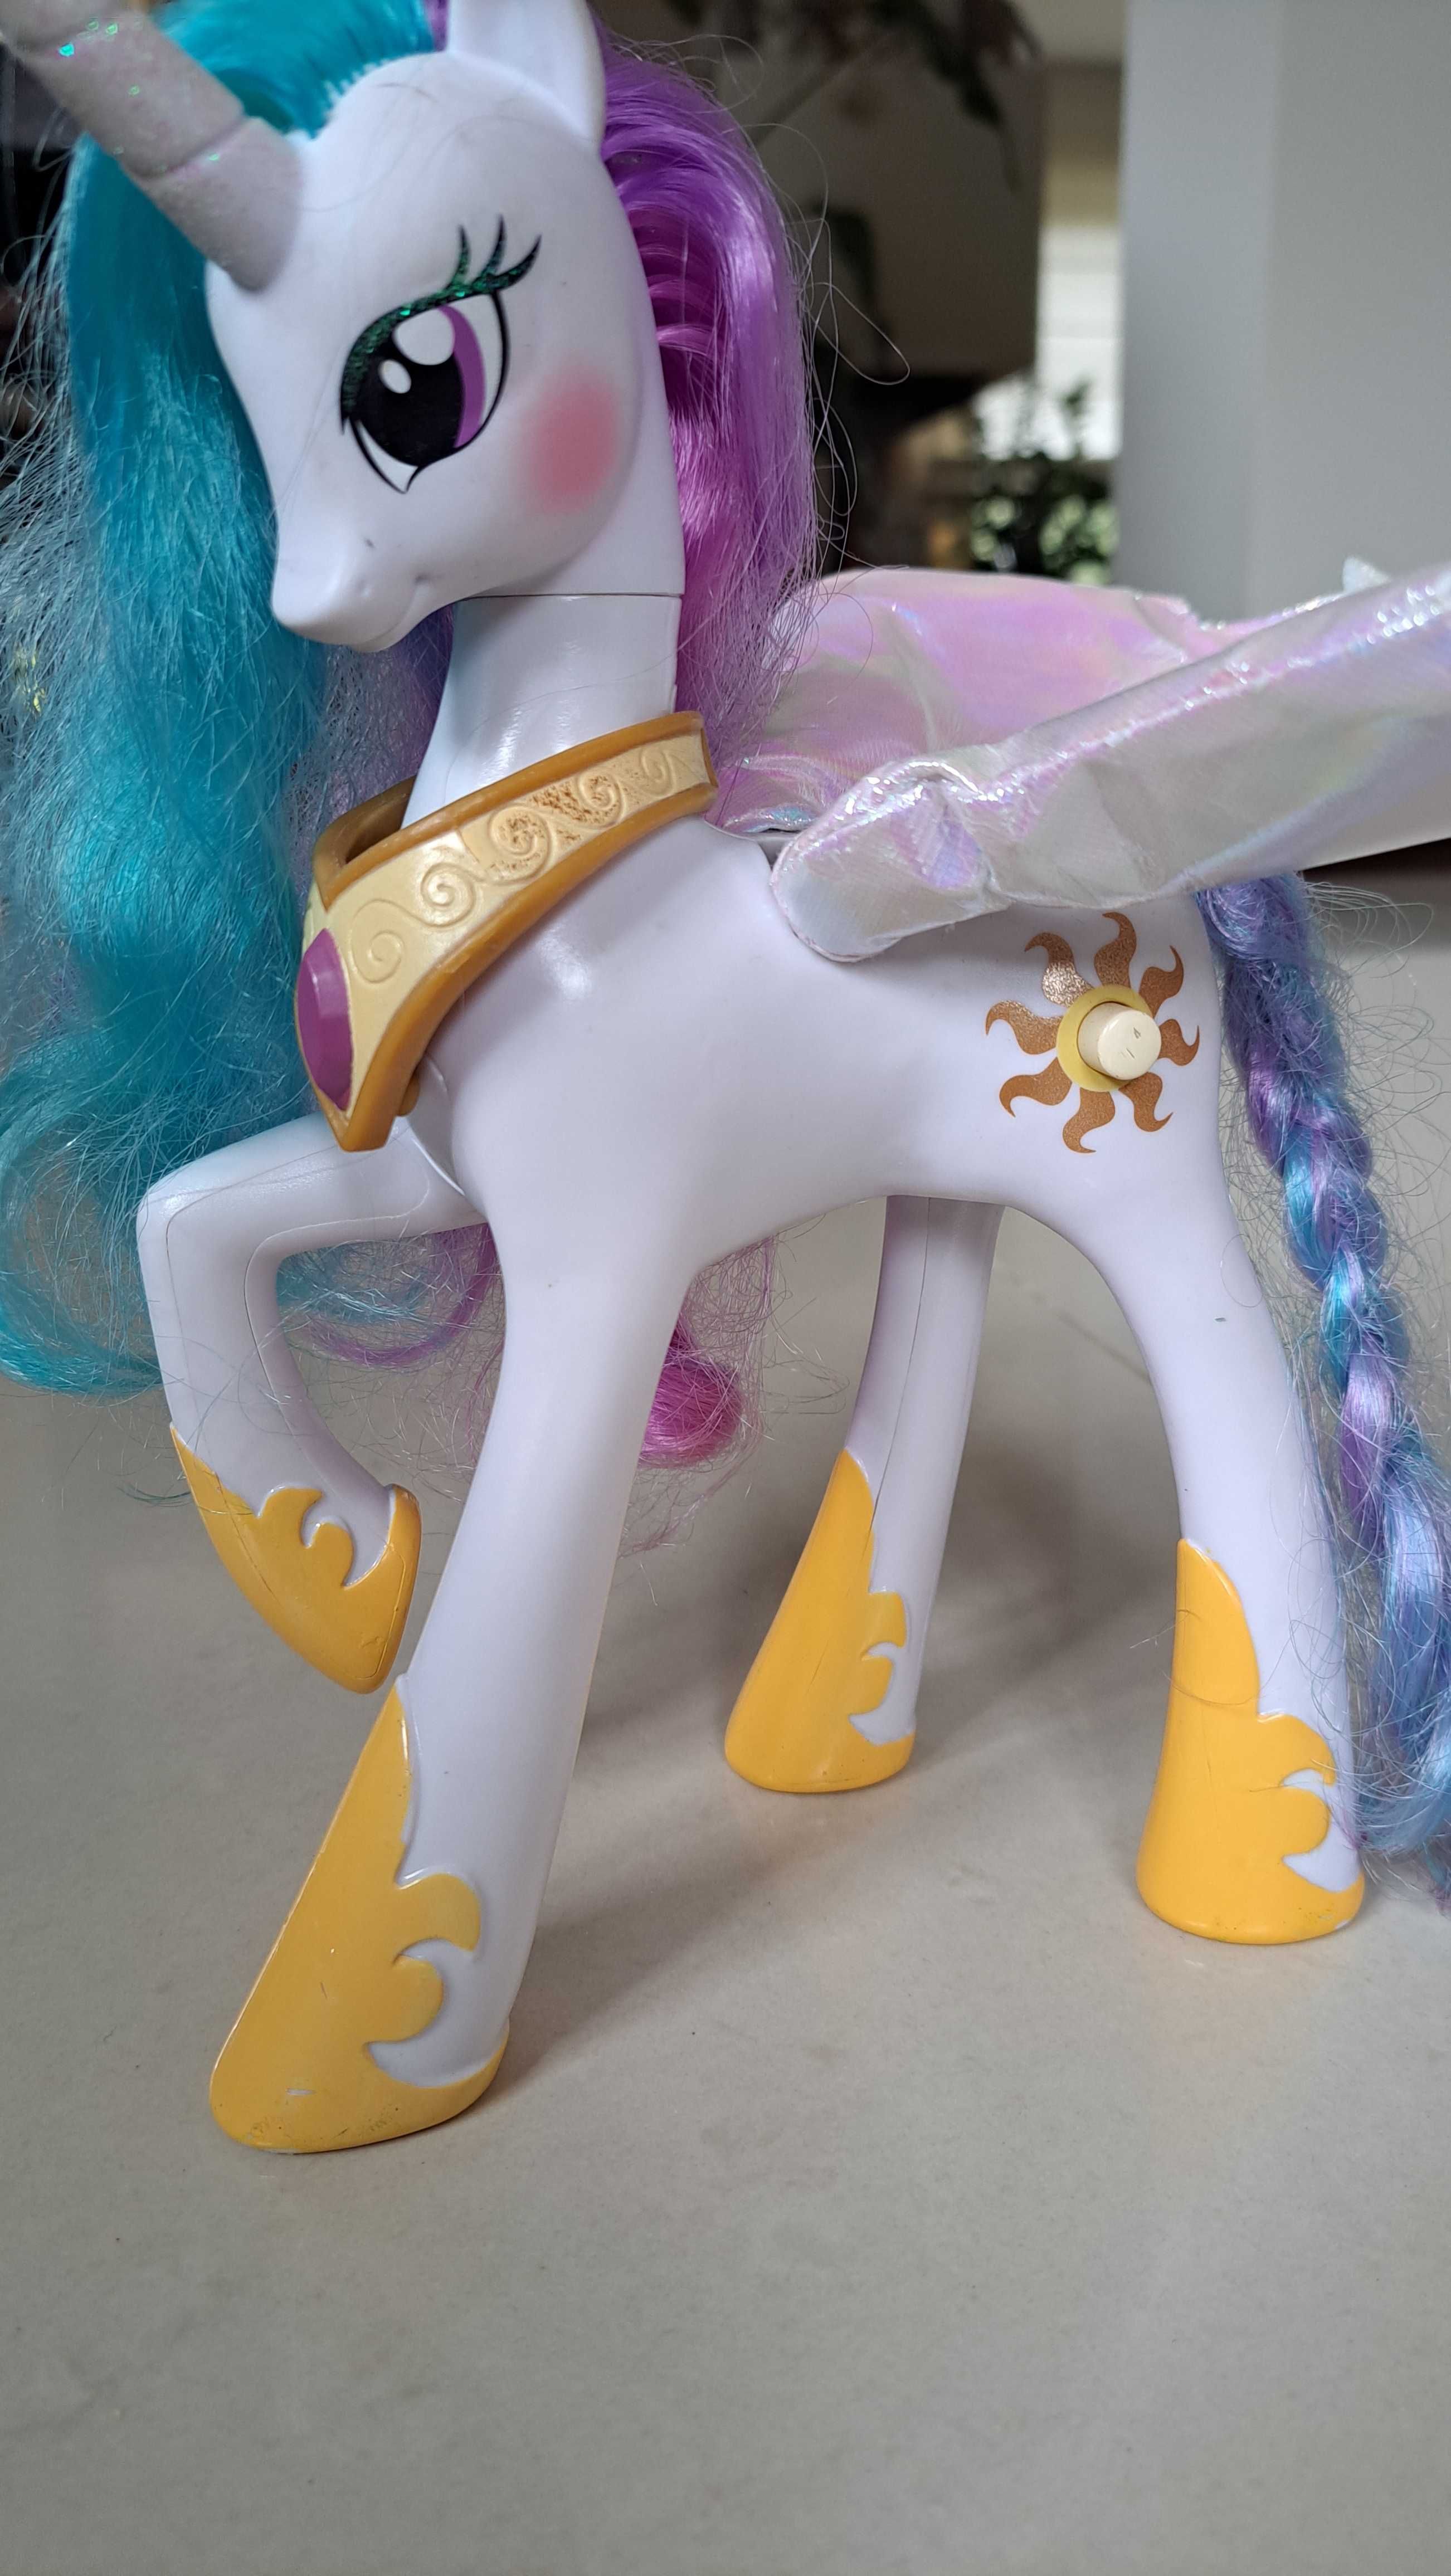 Zabawka Konik My Little Pony księżniczka Celestia mówiący konik.